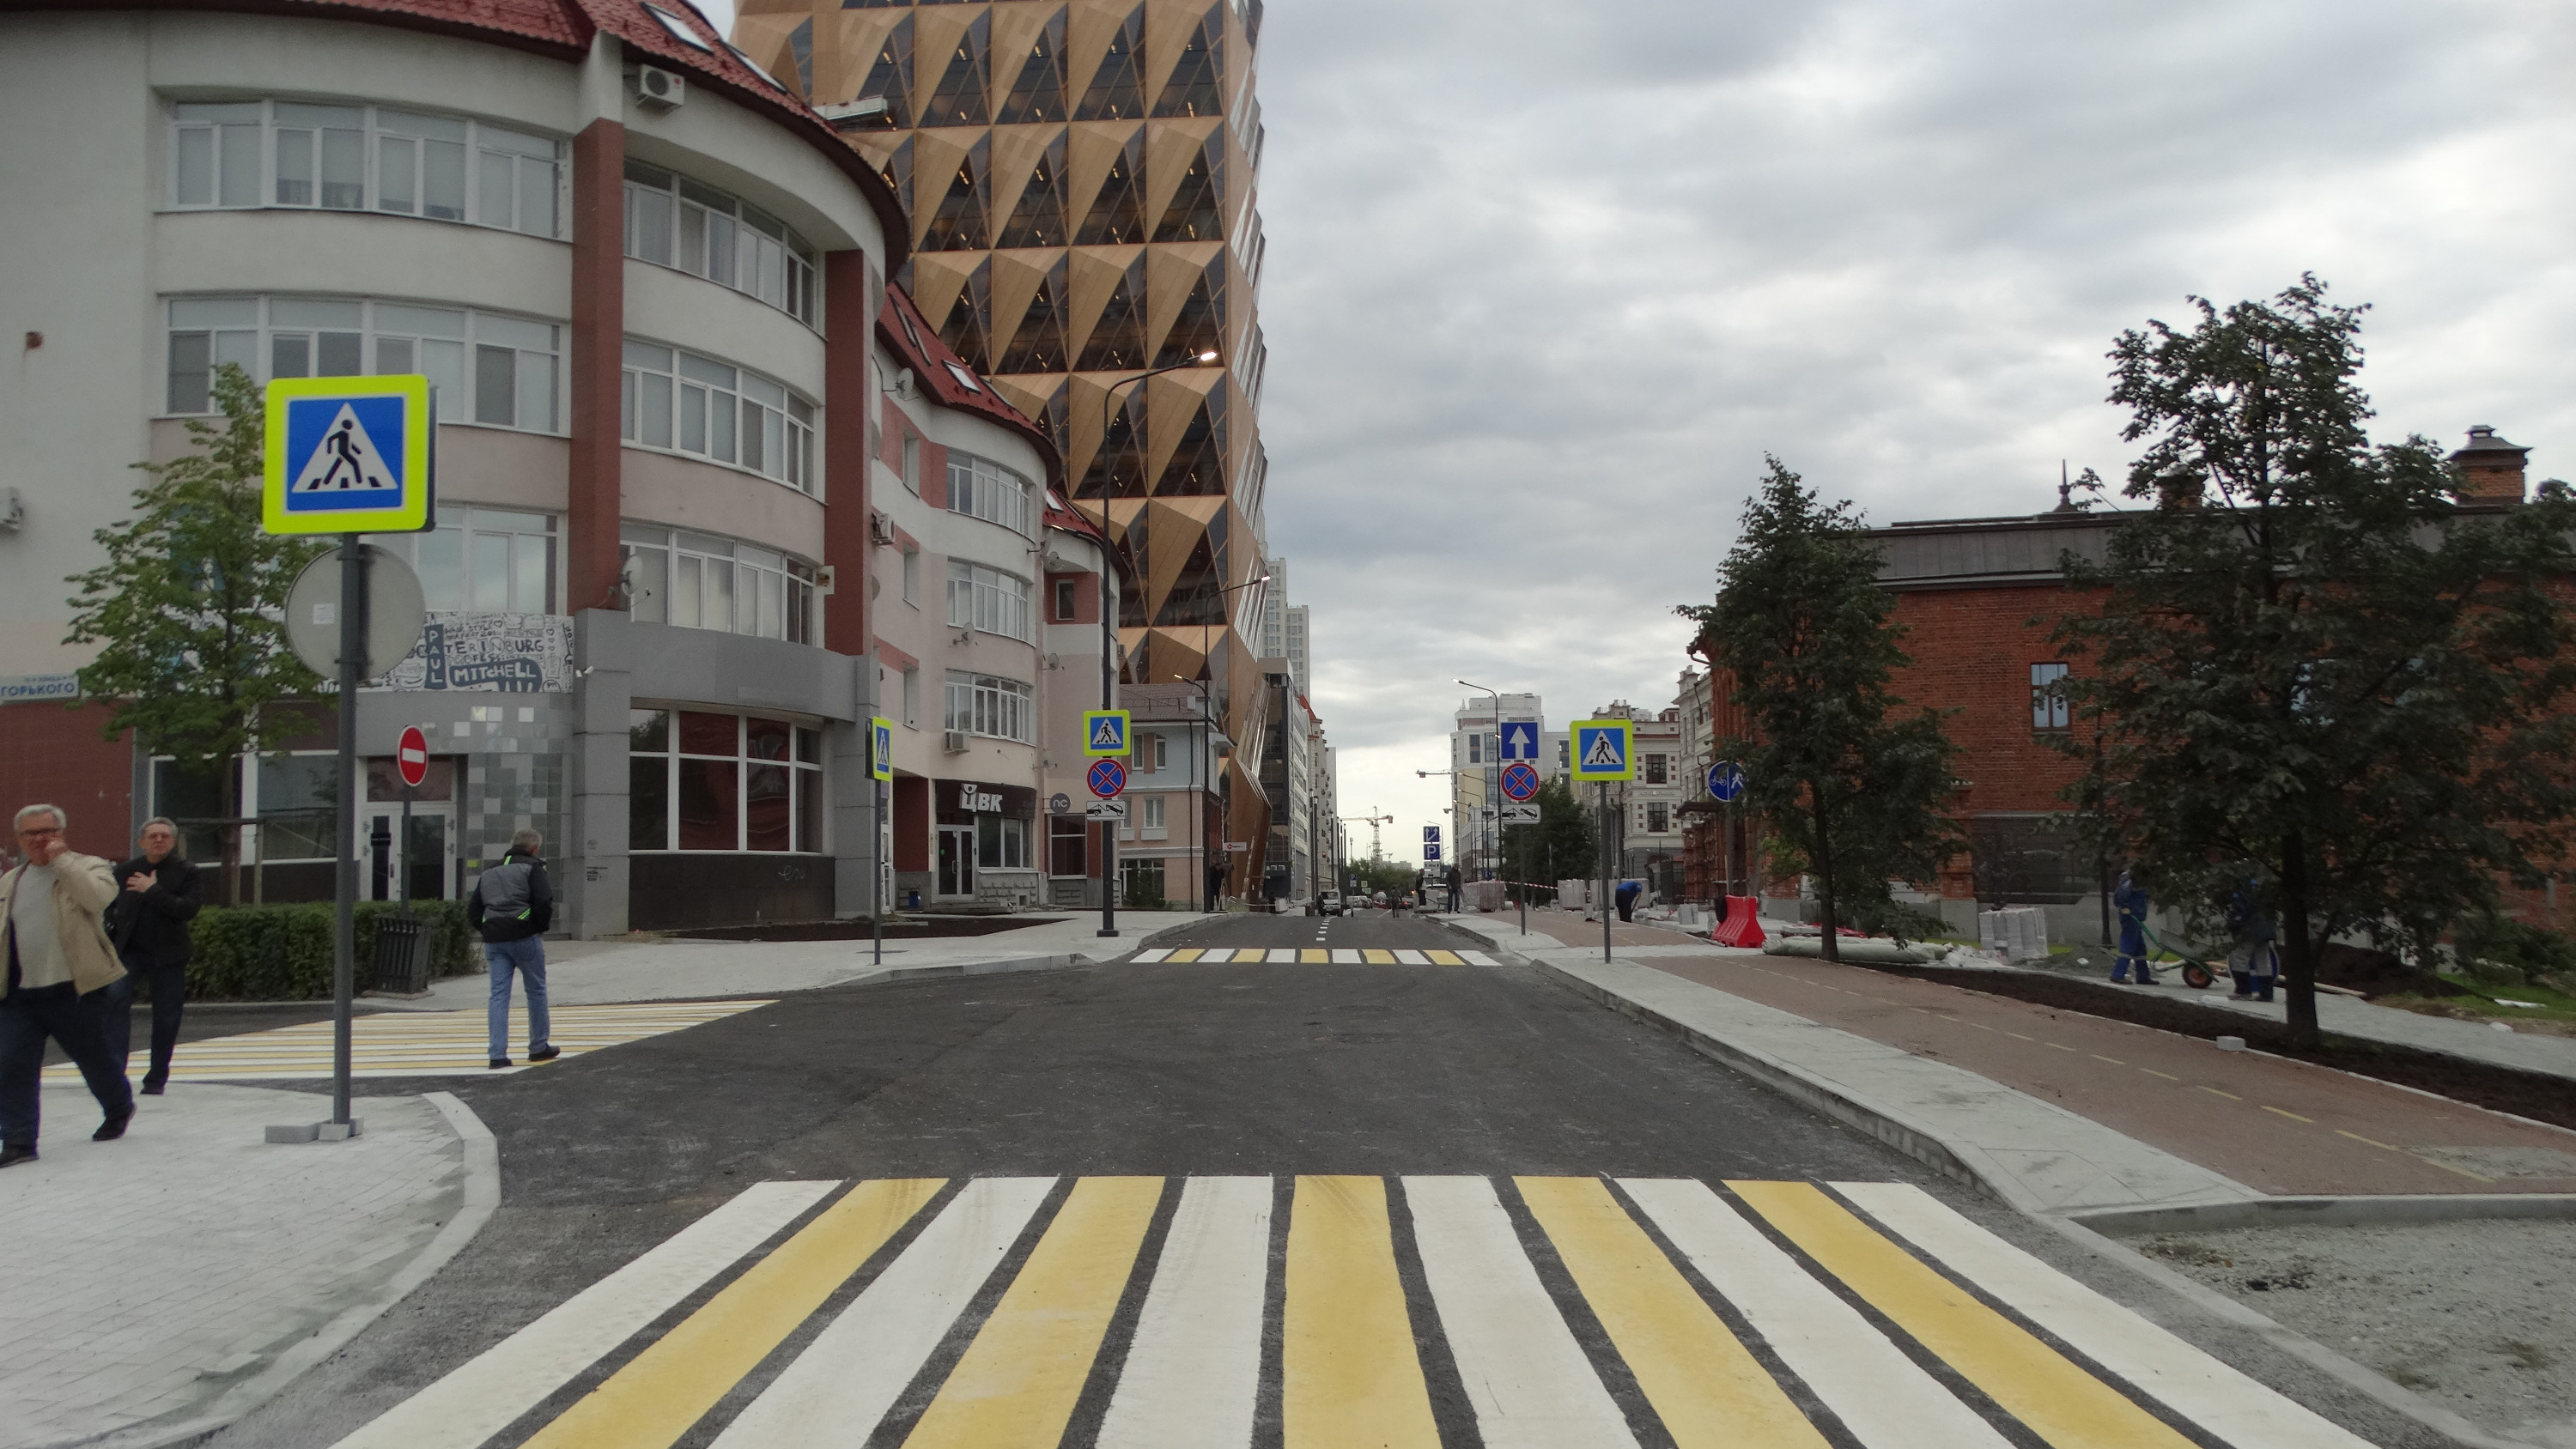 Узкую улицу в центре Екатеринбурга внезапно решили сделать двусторонней: схема